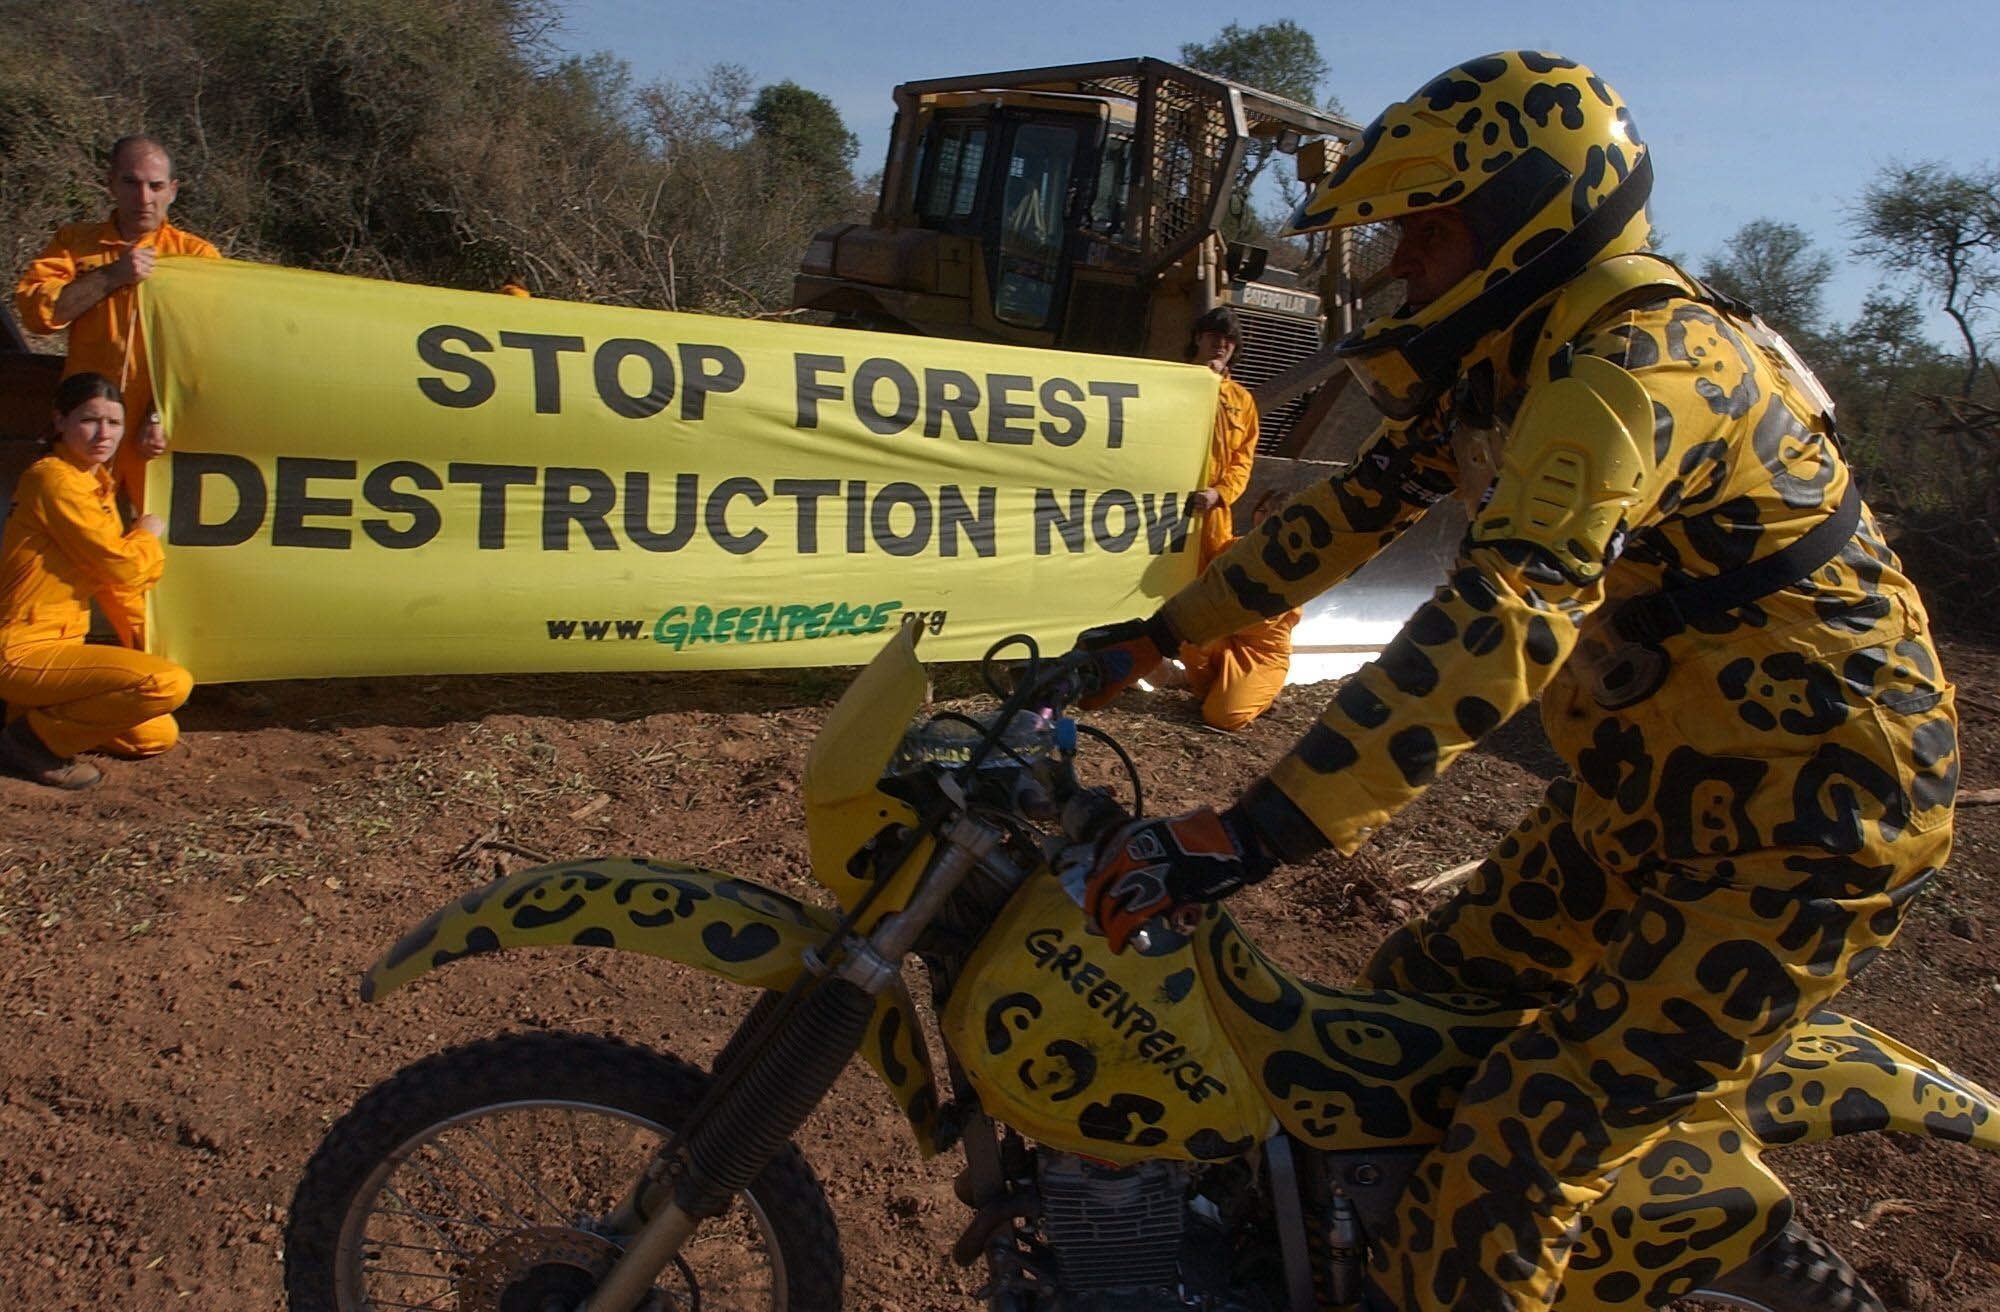 Los "jaguares" de Greenpeace en una protesta por la deforestación en Salta, 